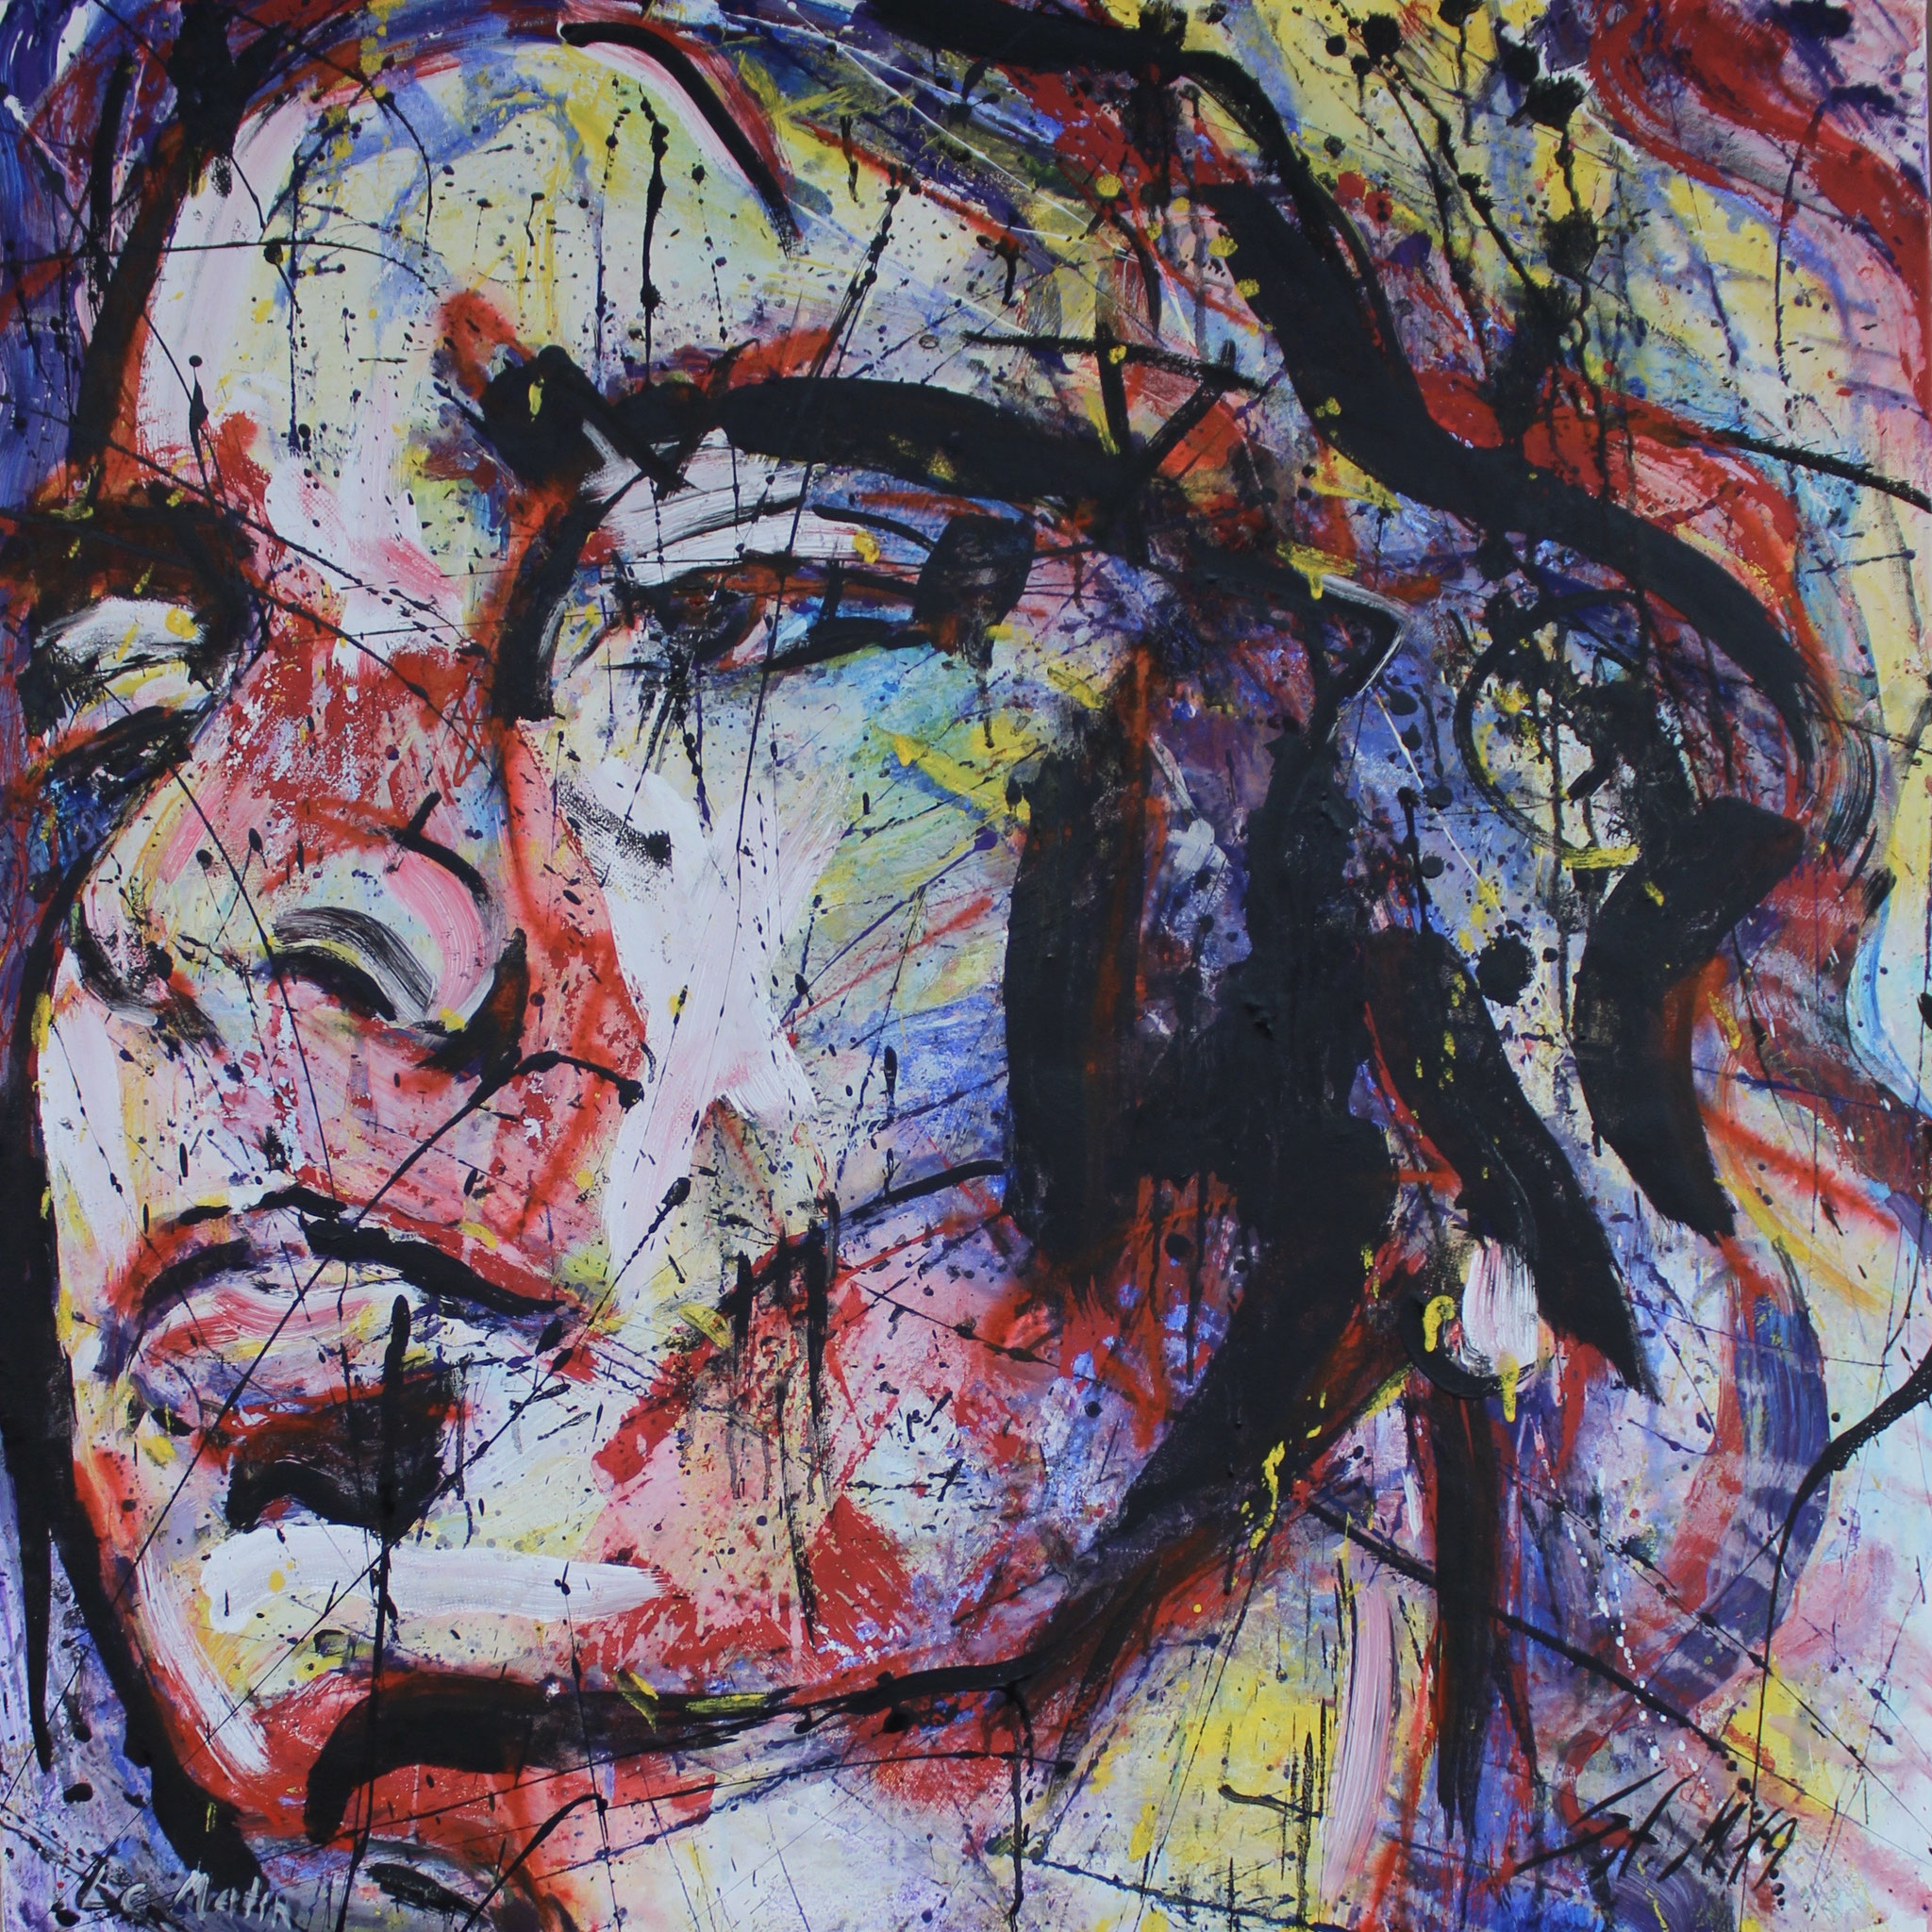 "Le Matin", Laura, 2019, mixed media on canvas,100cm x 100cm